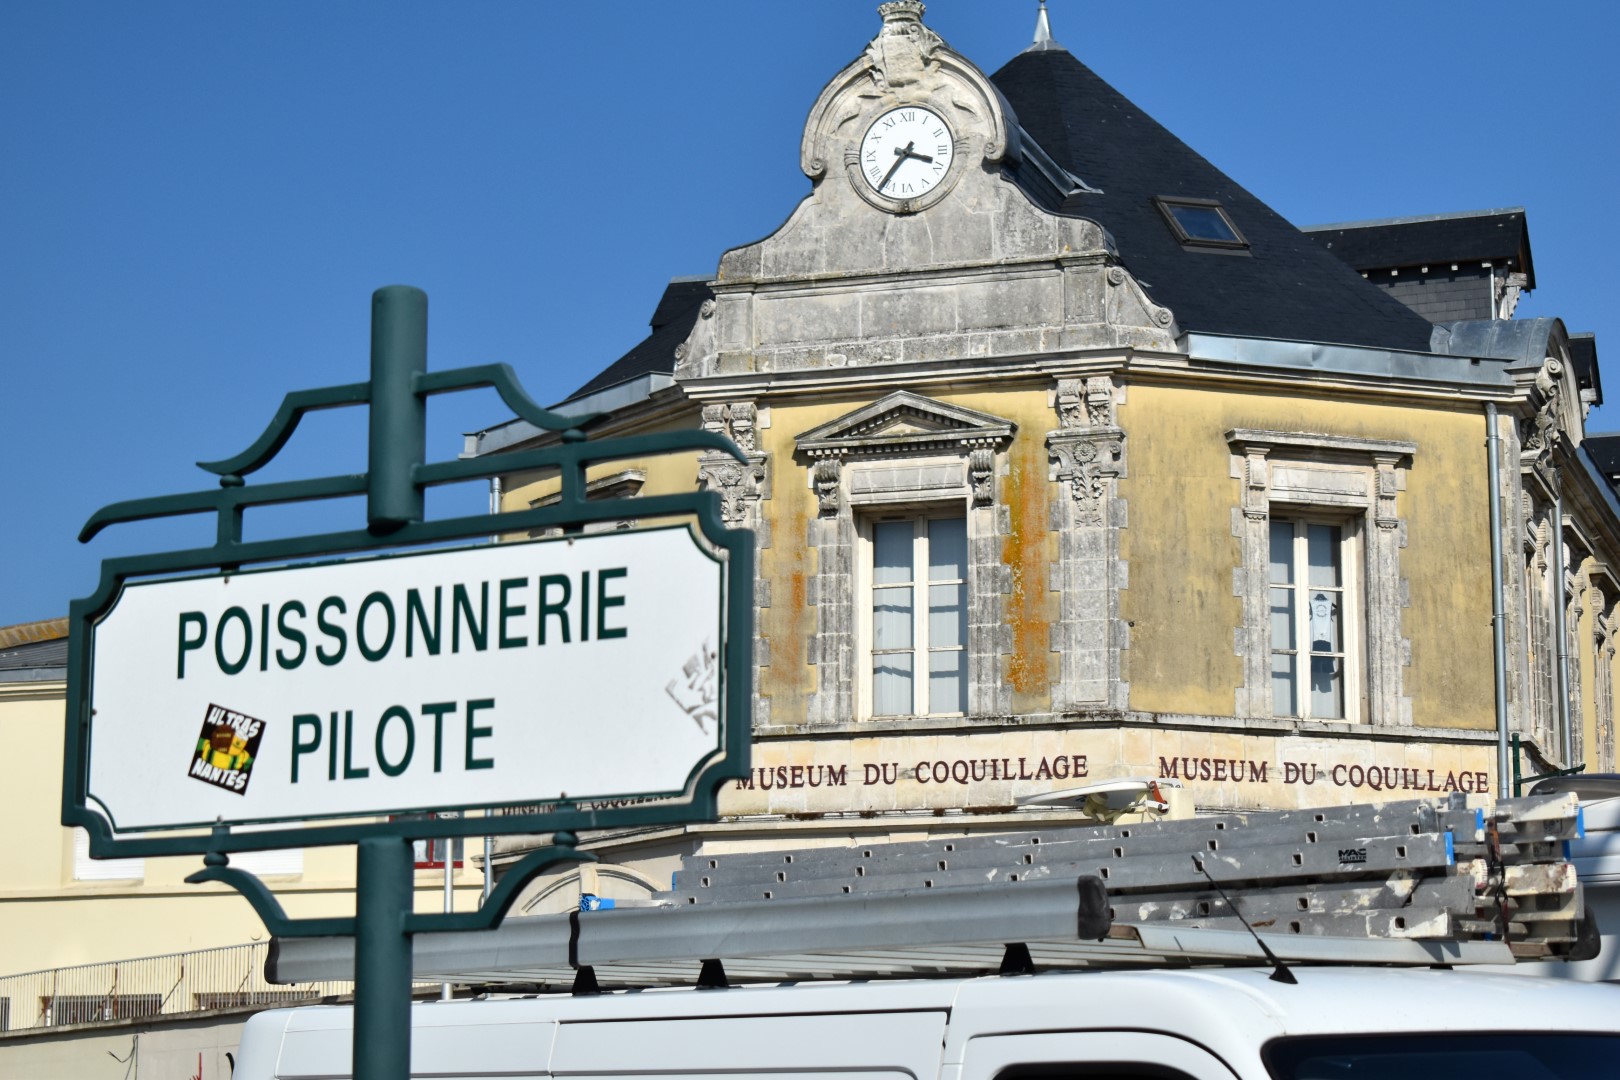 Poissonnerie pilote, 1 Quai Ernest de Franqueville, Les Sables-d'Olonne